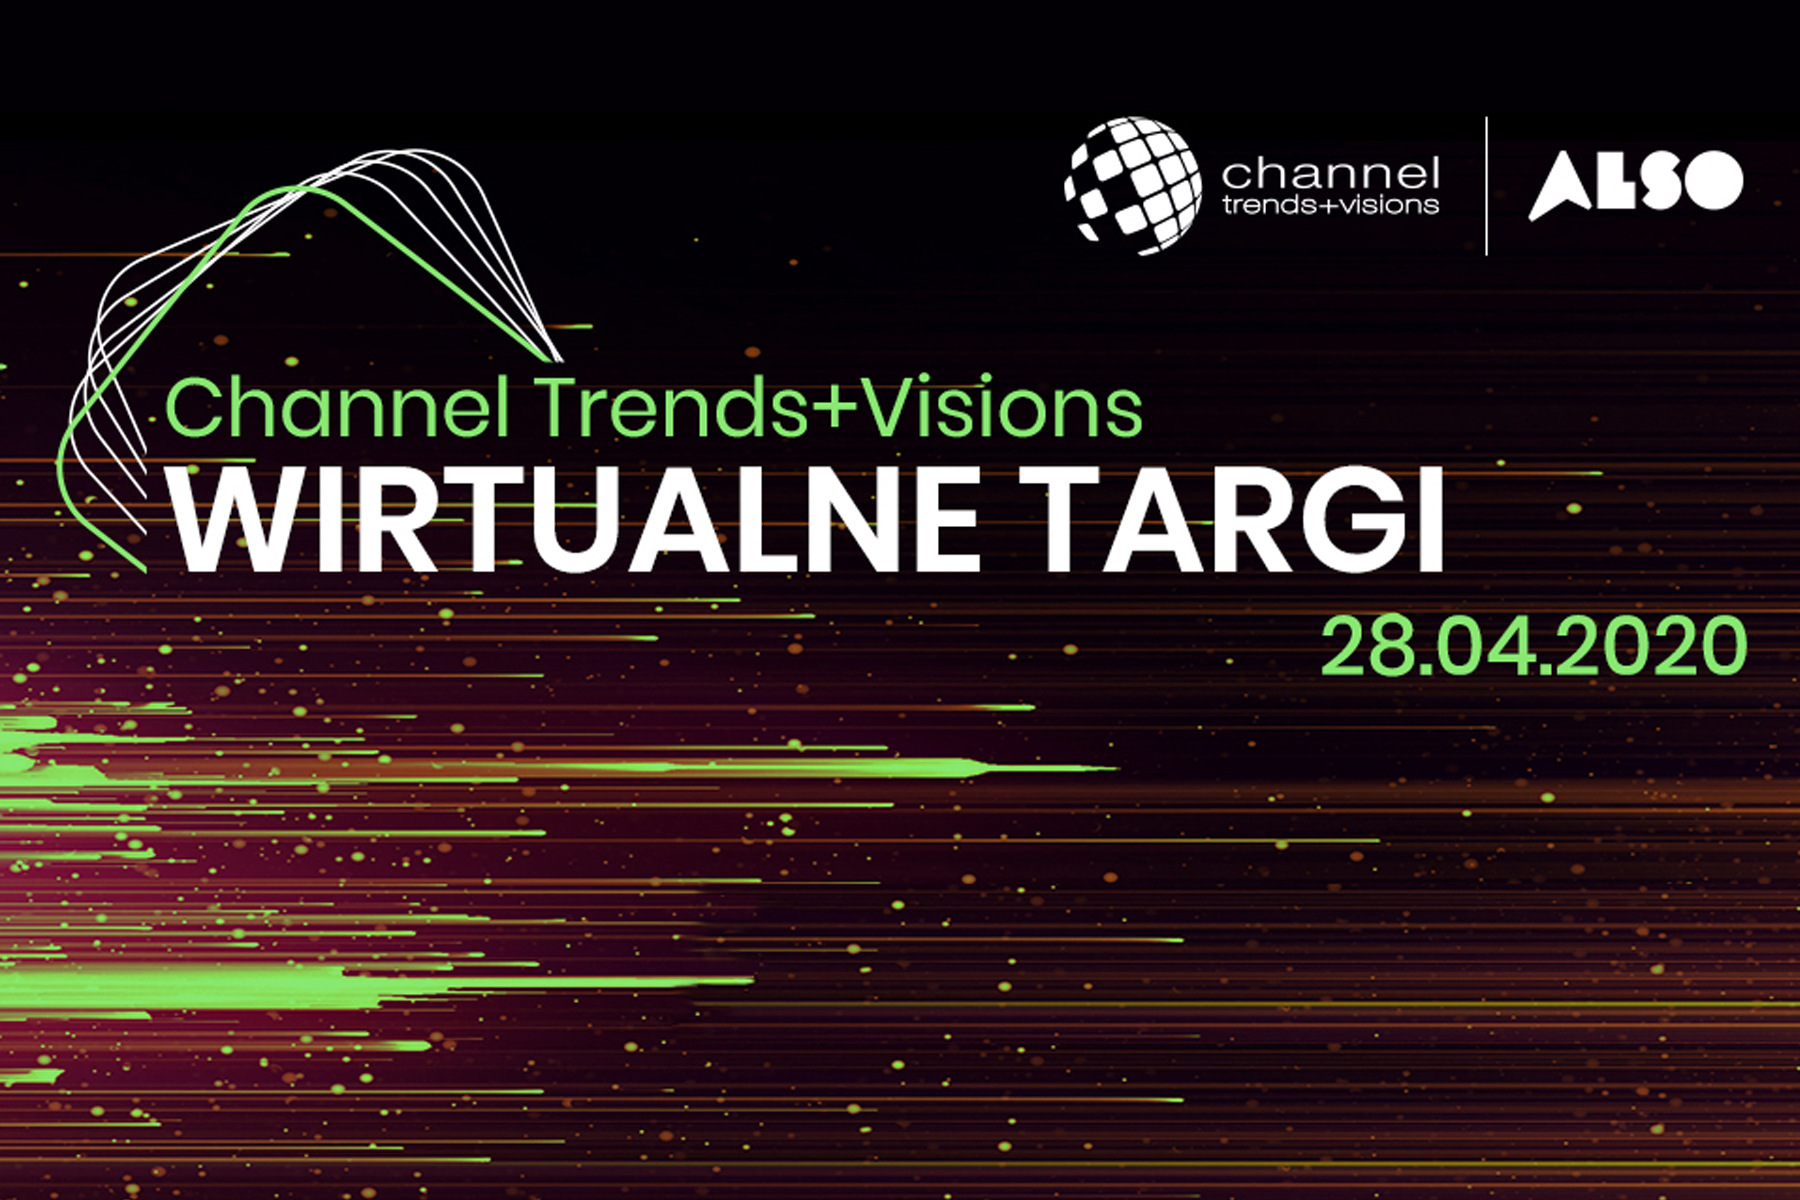 ALSO: wirtualne targi Channel Trends+Visions 2020